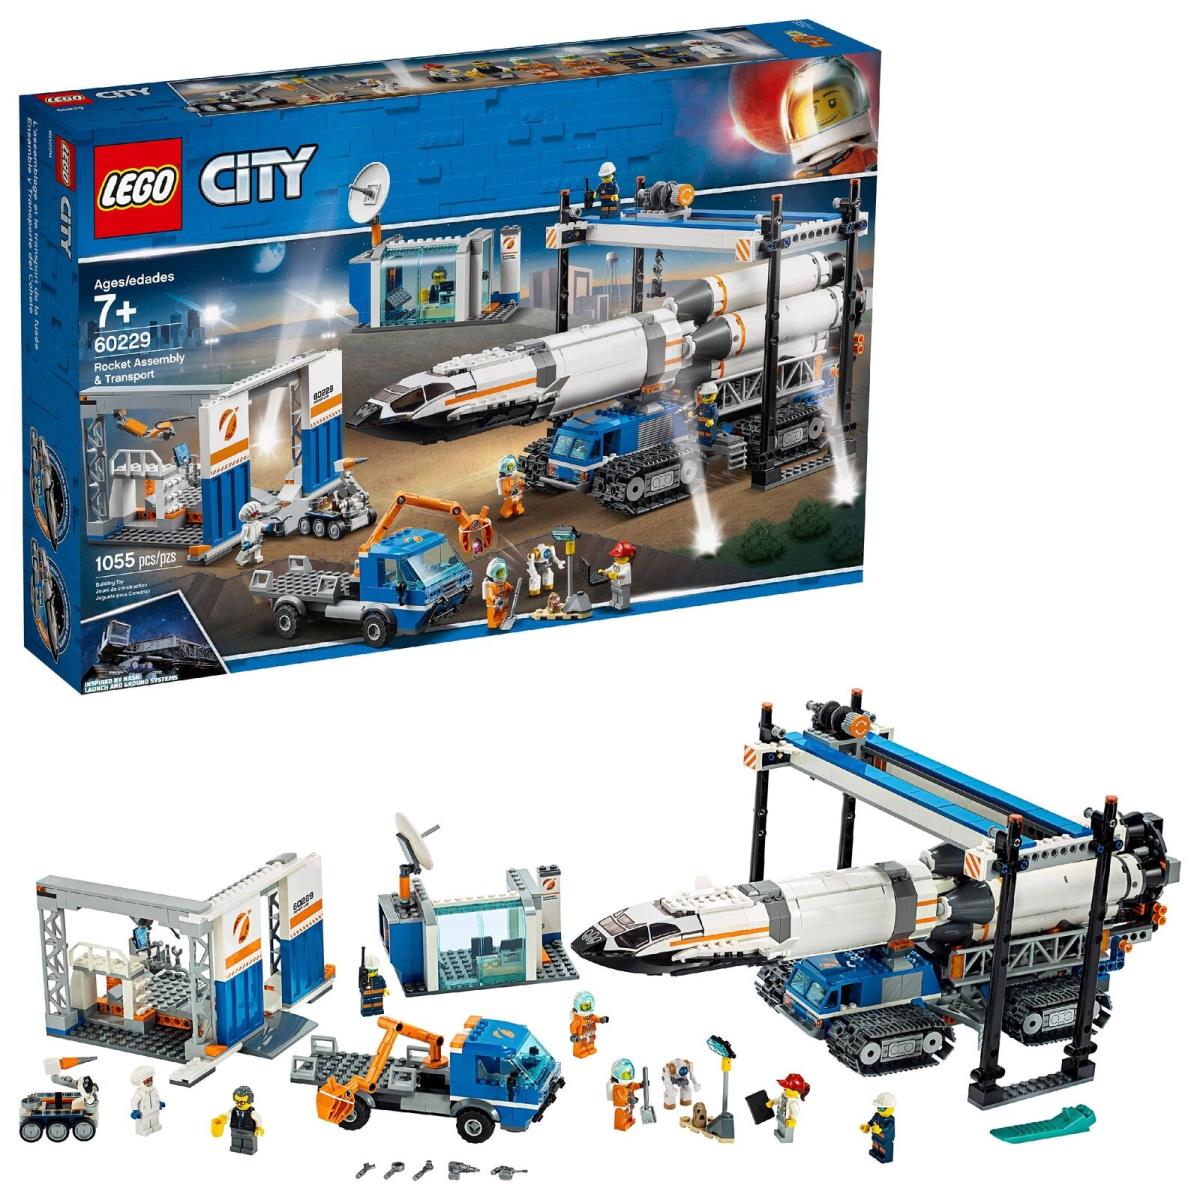 Lego City Space Port Rocket Assembly Transport 60229